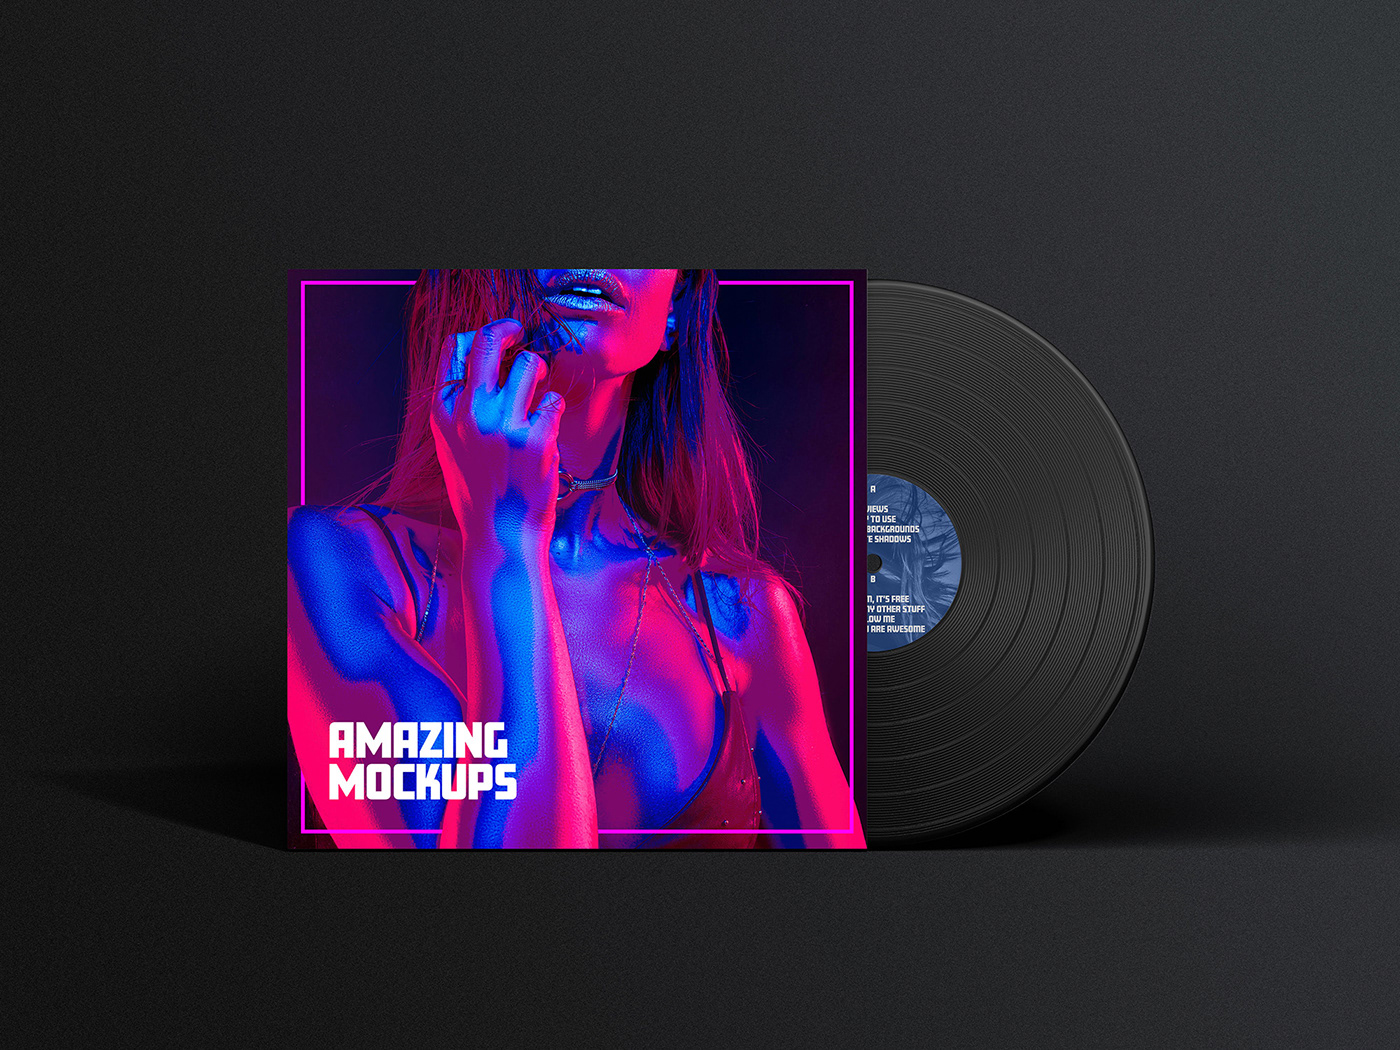 dark music vinyl Album Cover Design free mockup  graphic design  freebie brand identity